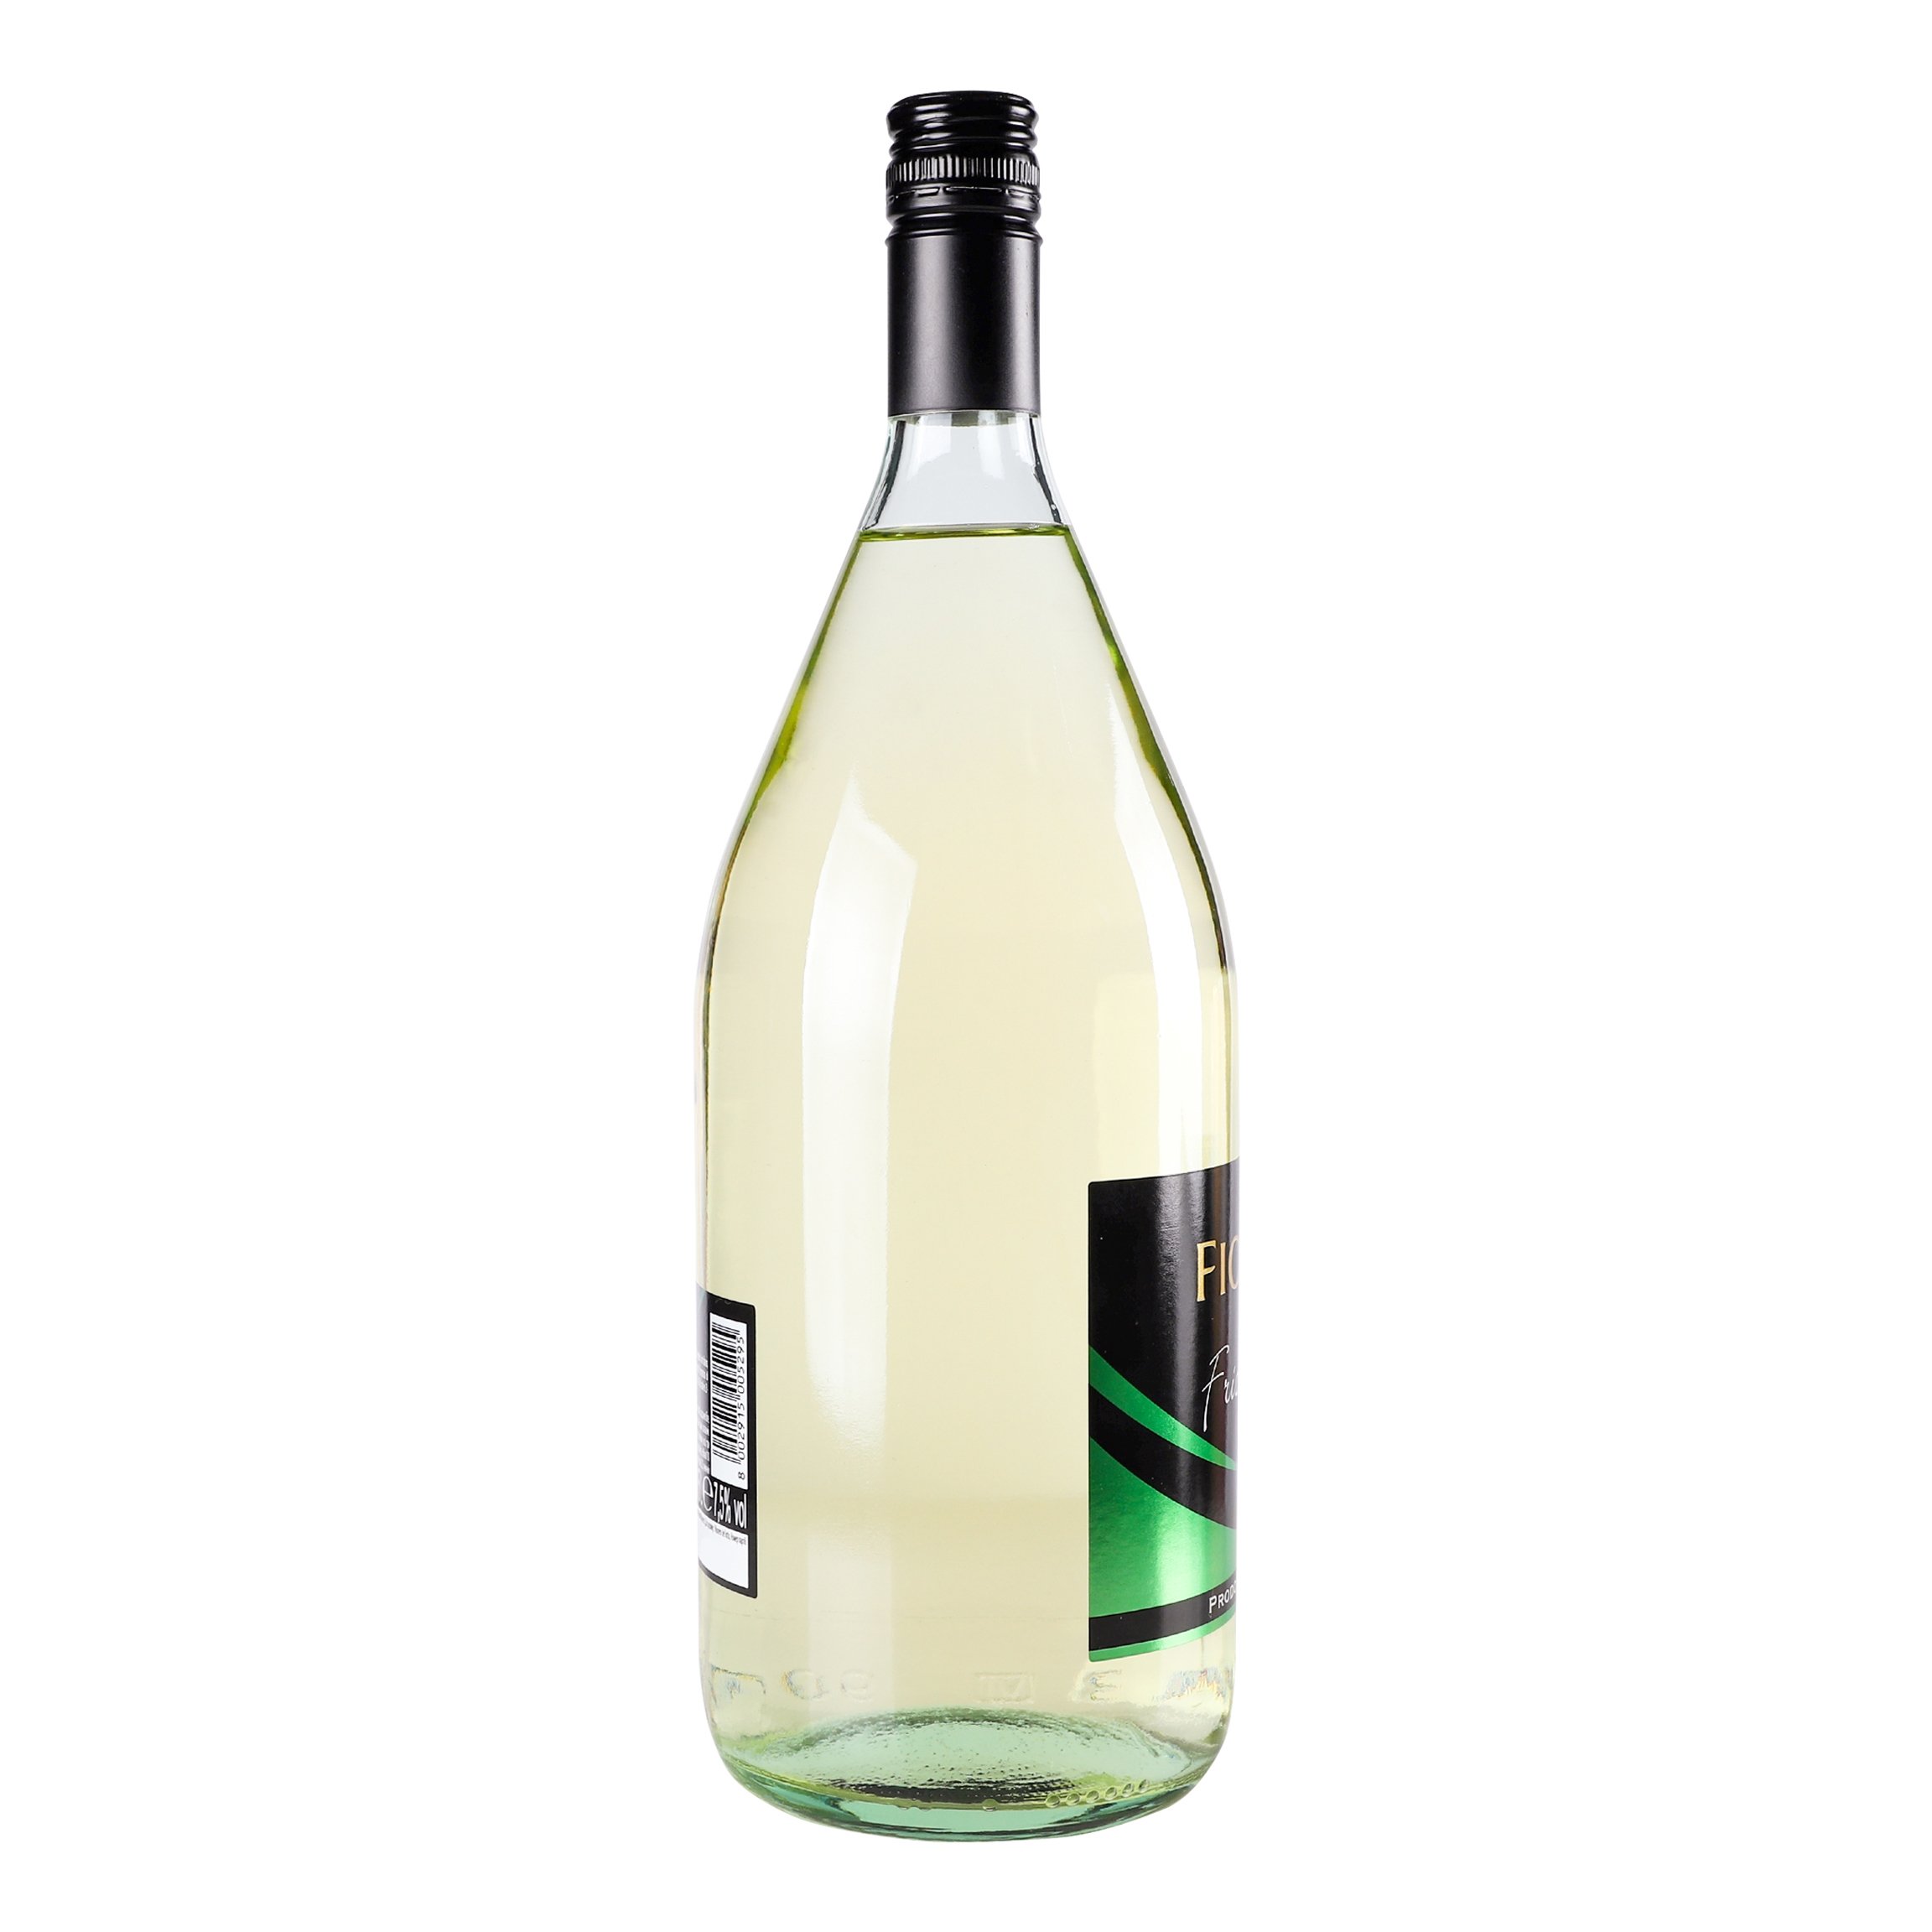 Напиток на основе вина Fiorelli Frizzantino Bianco, белый, полусладкий, 7,5%, 1,5 л (ALR6174) - фото 4